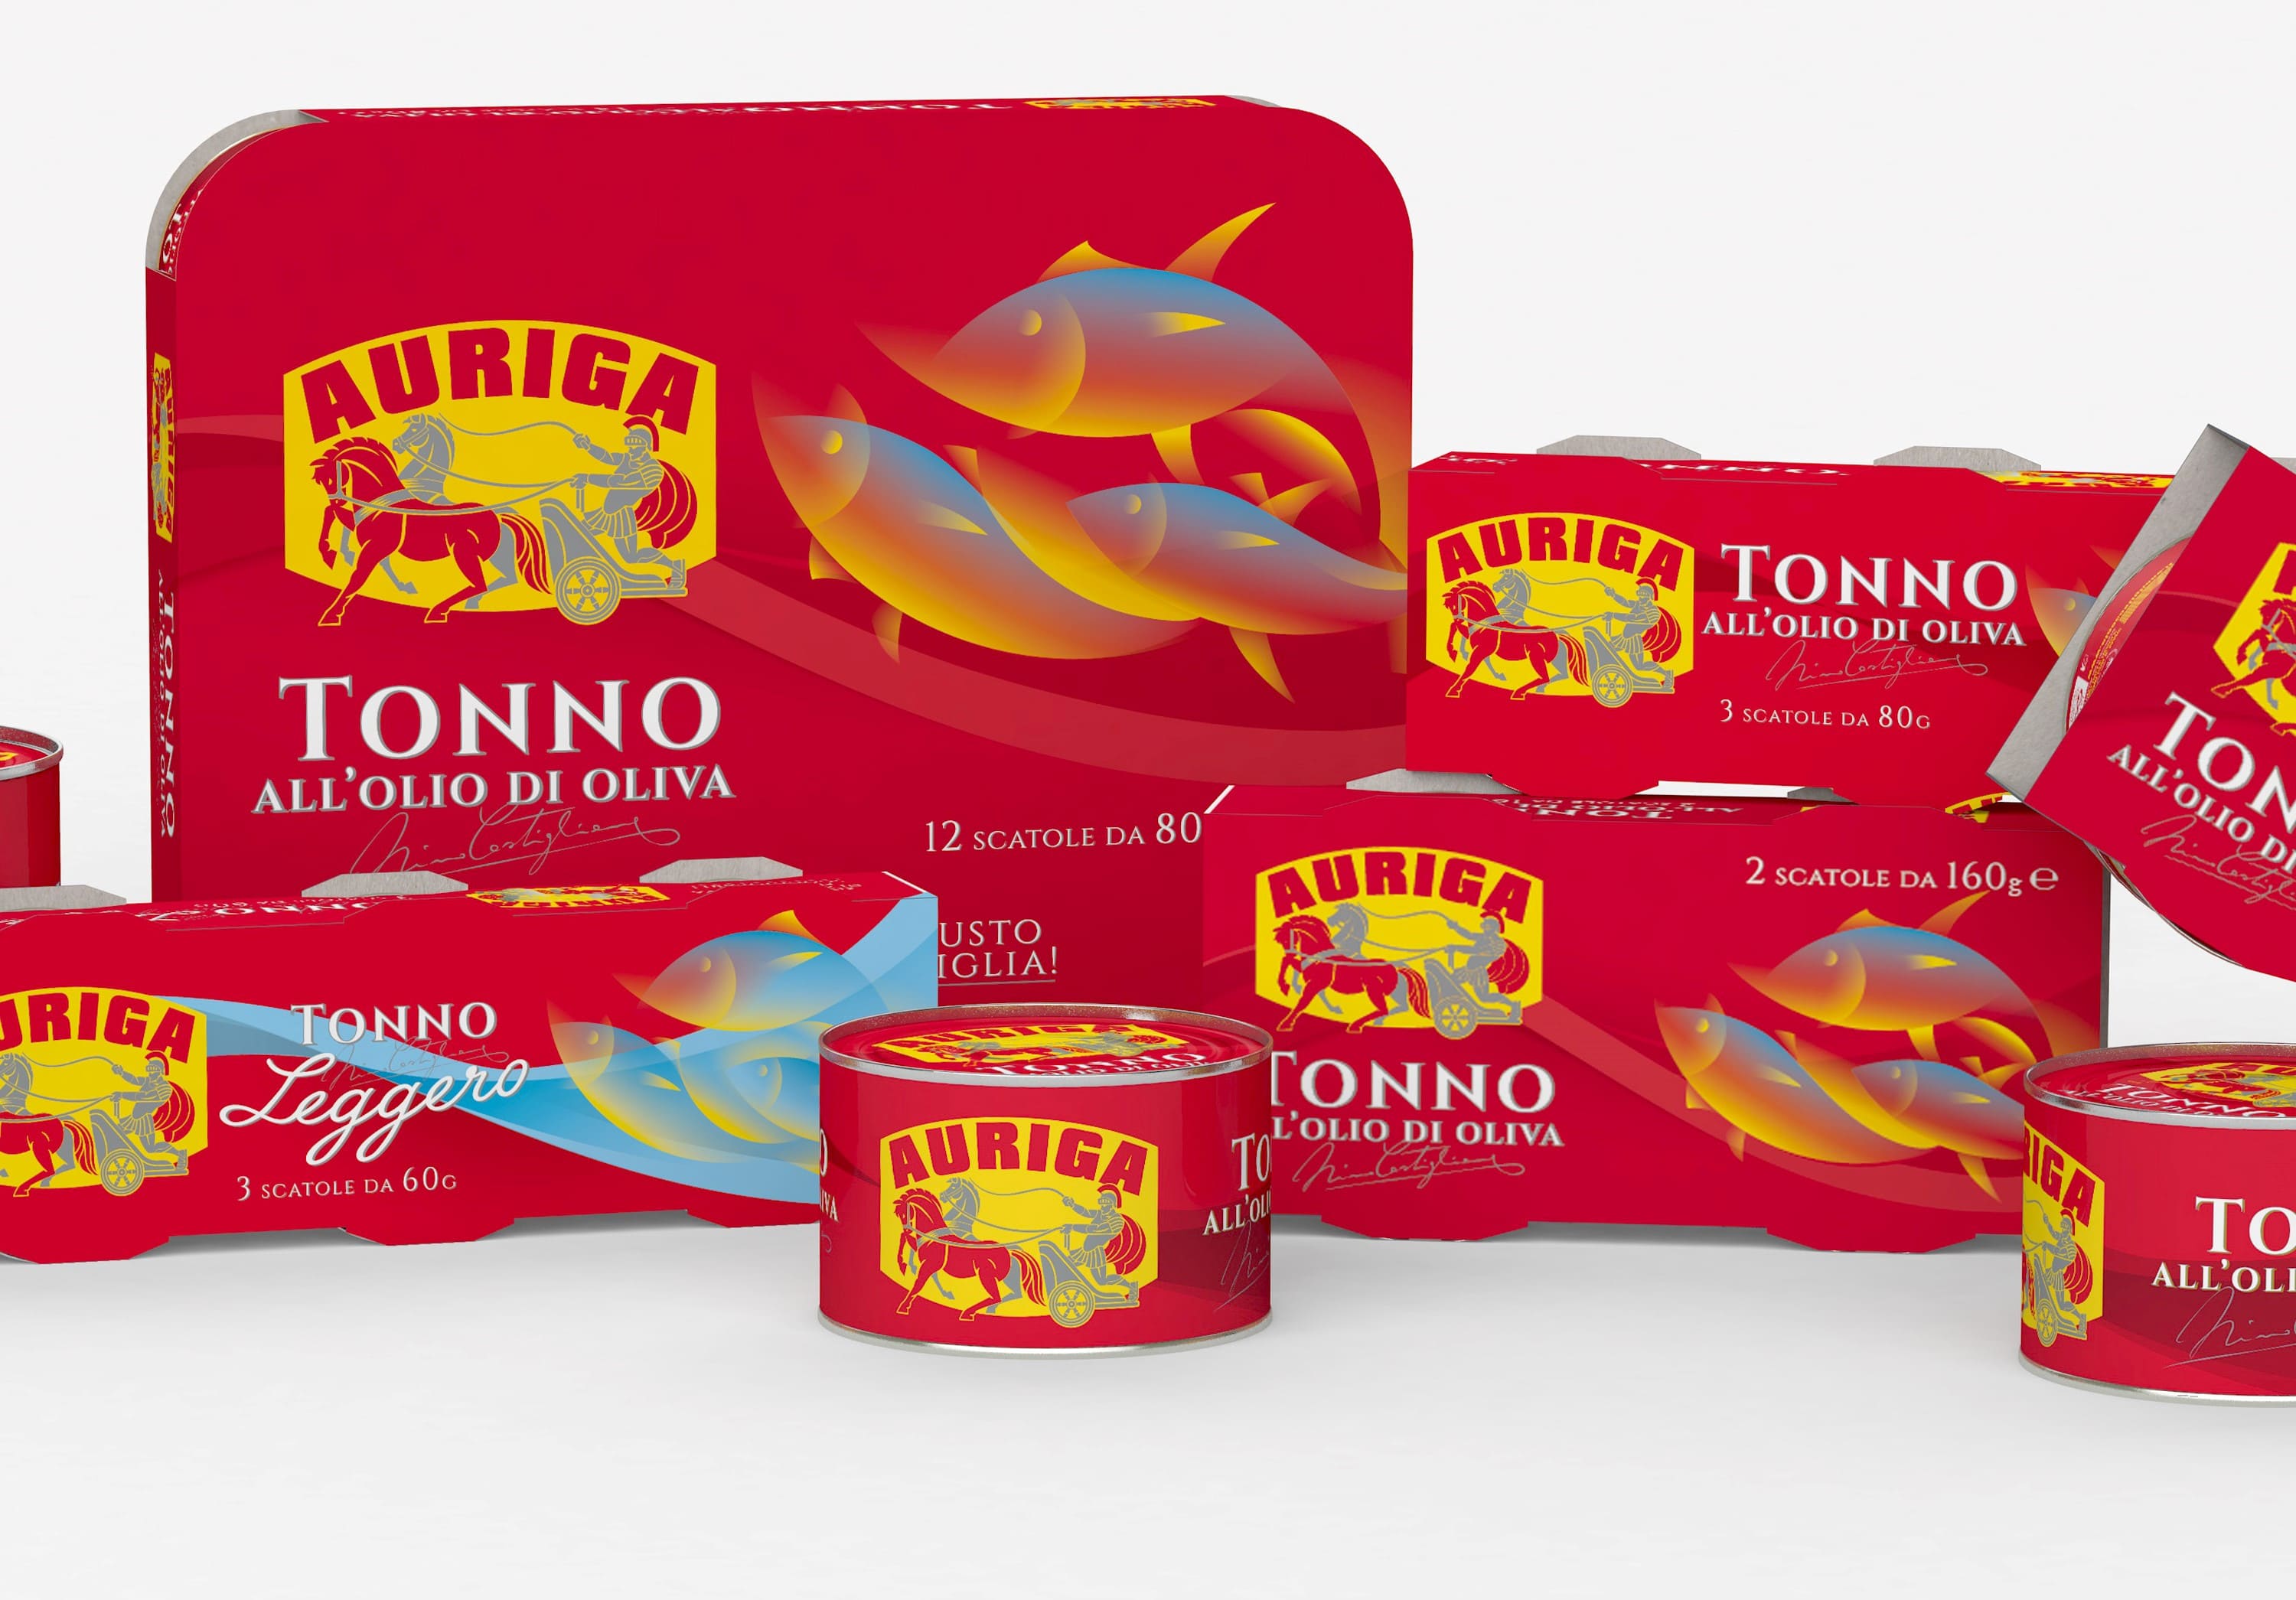 La qualità del tonno Auriga, direttamente dal Trapanese